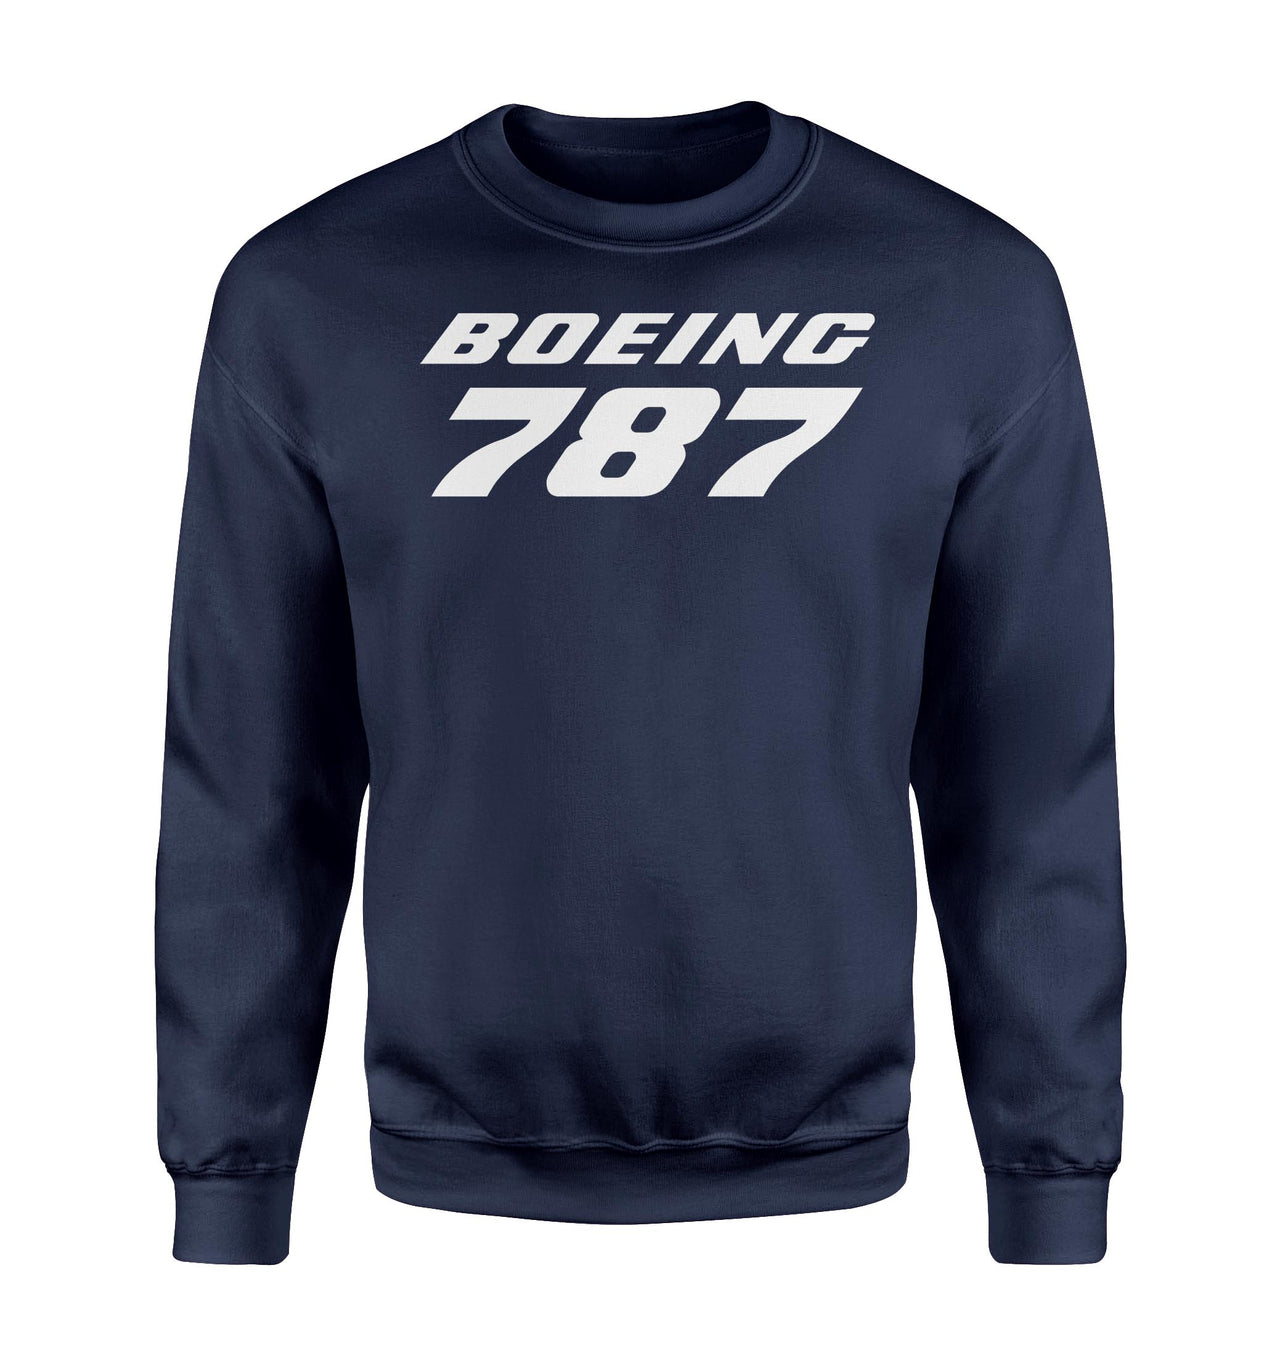 Boeing 787 & Text Designed Sweatshirts